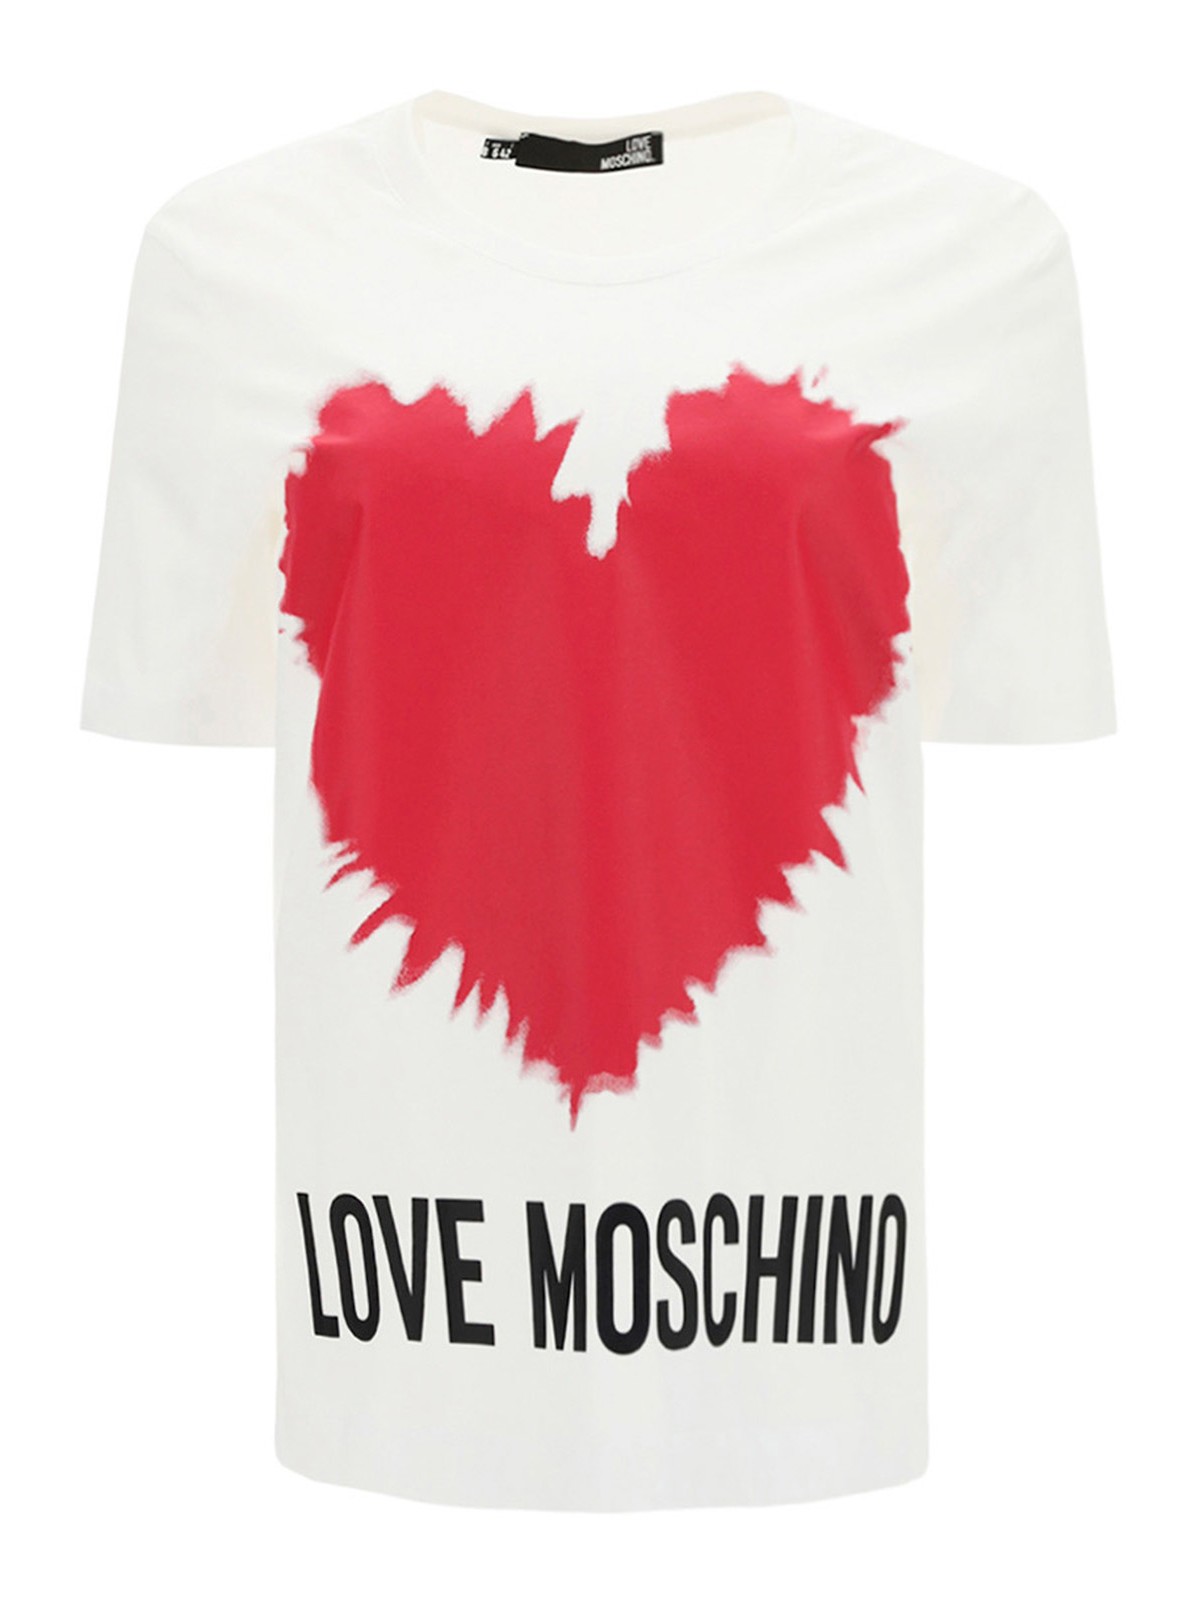 moschino heart shirt